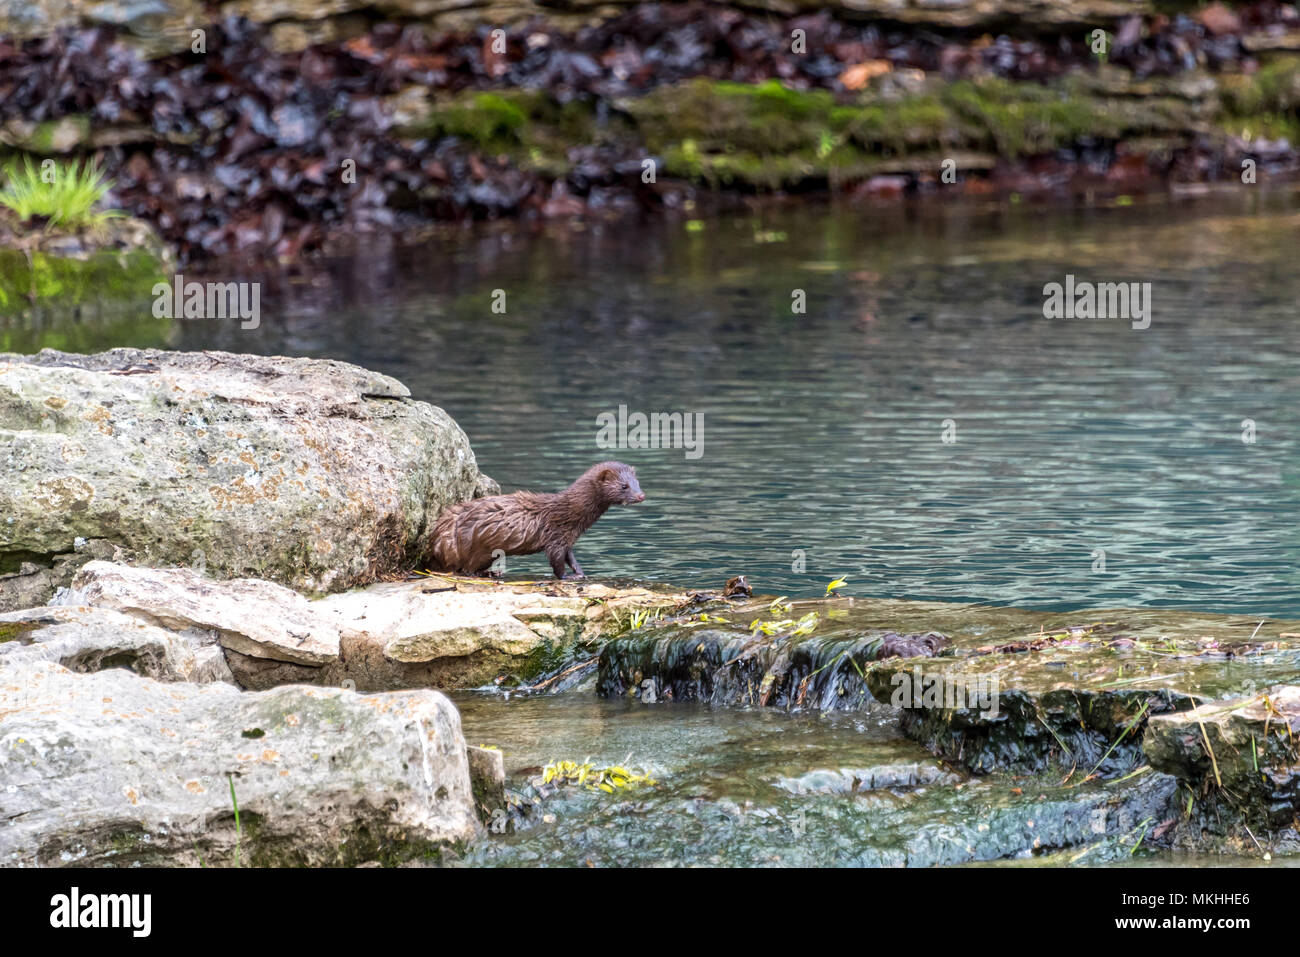 Un mignon bébé mink passe sur l'un des pierres sur une petite chute dans un fluide en petite rivière ou Creek Canyon Cornouiller à Nature Park près de Branson, Missouri, USA. Banque D'Images